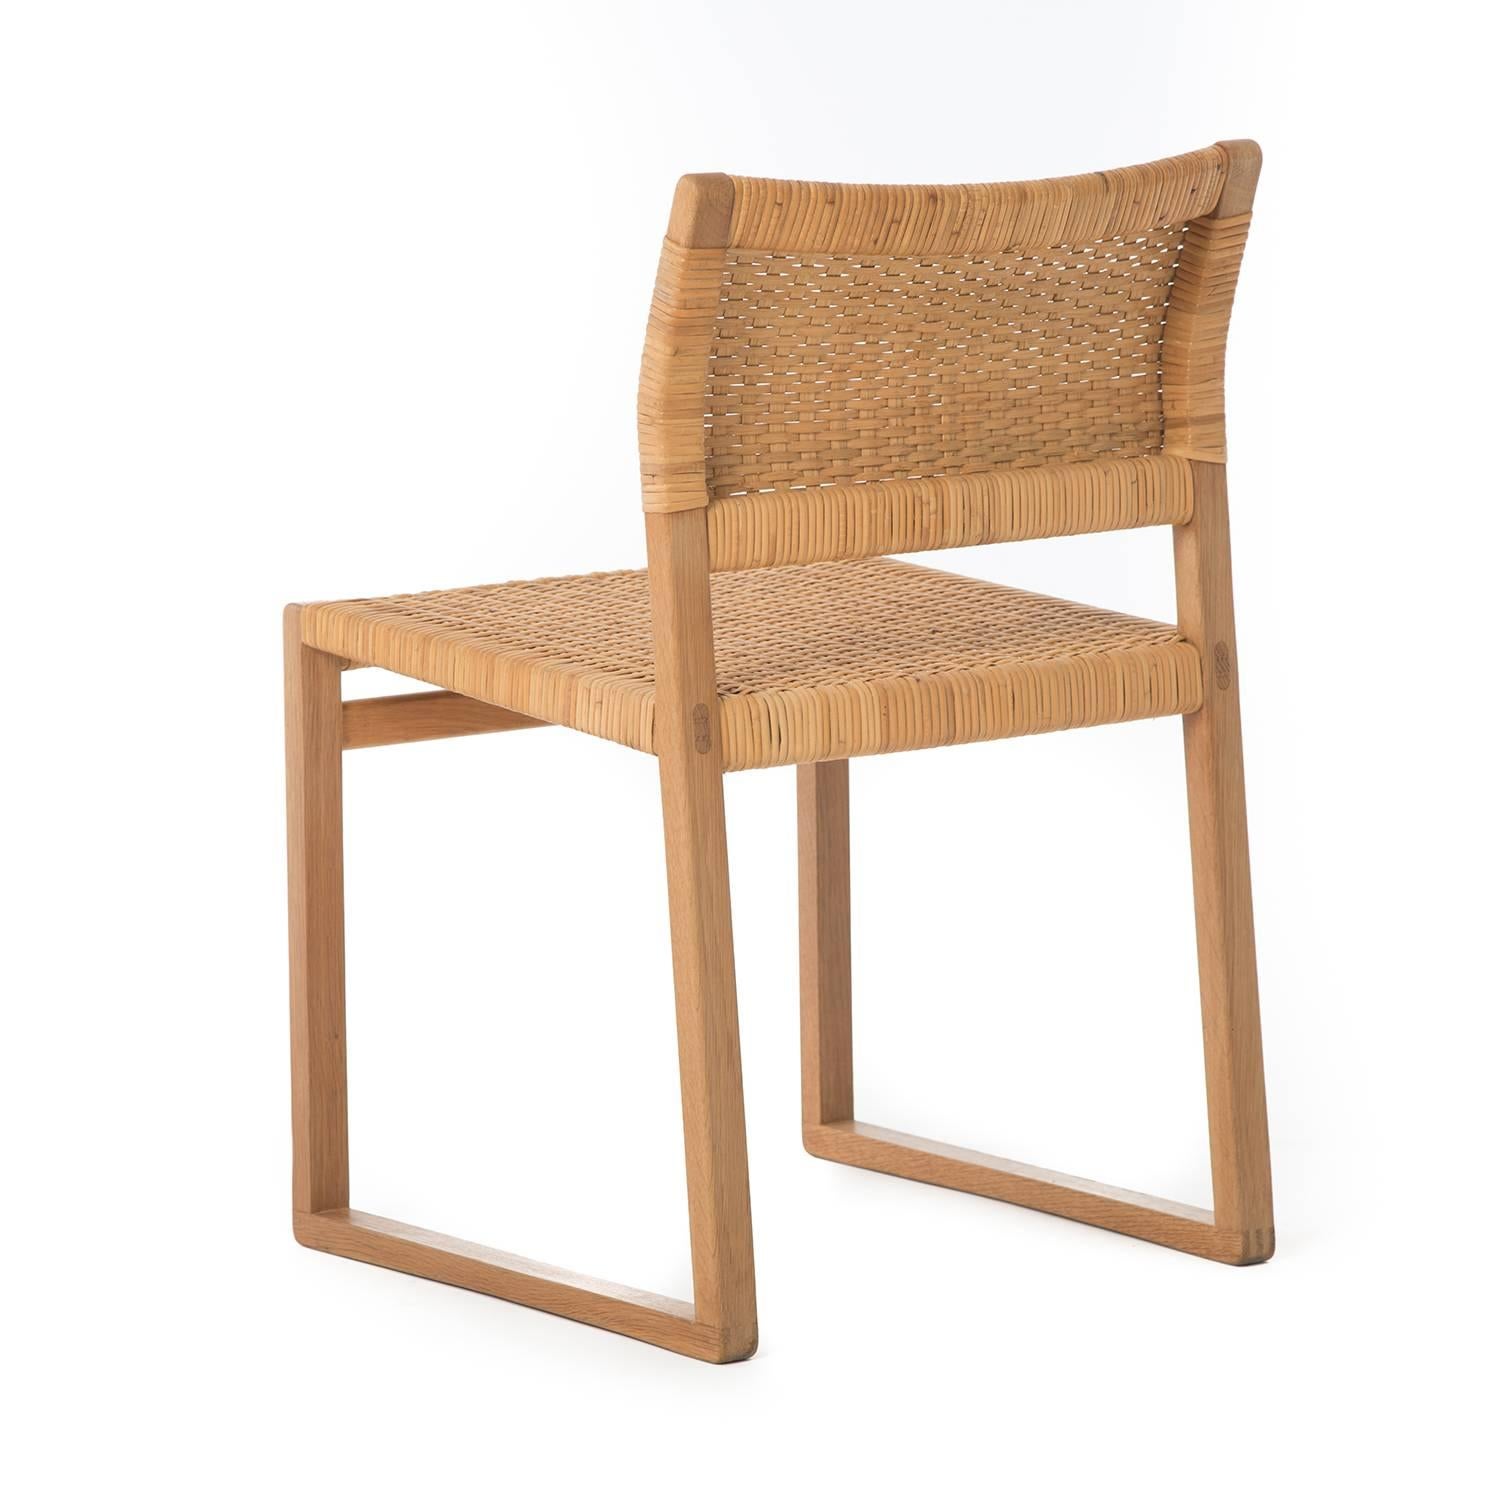 Danish Mogensen Sled Based Chair